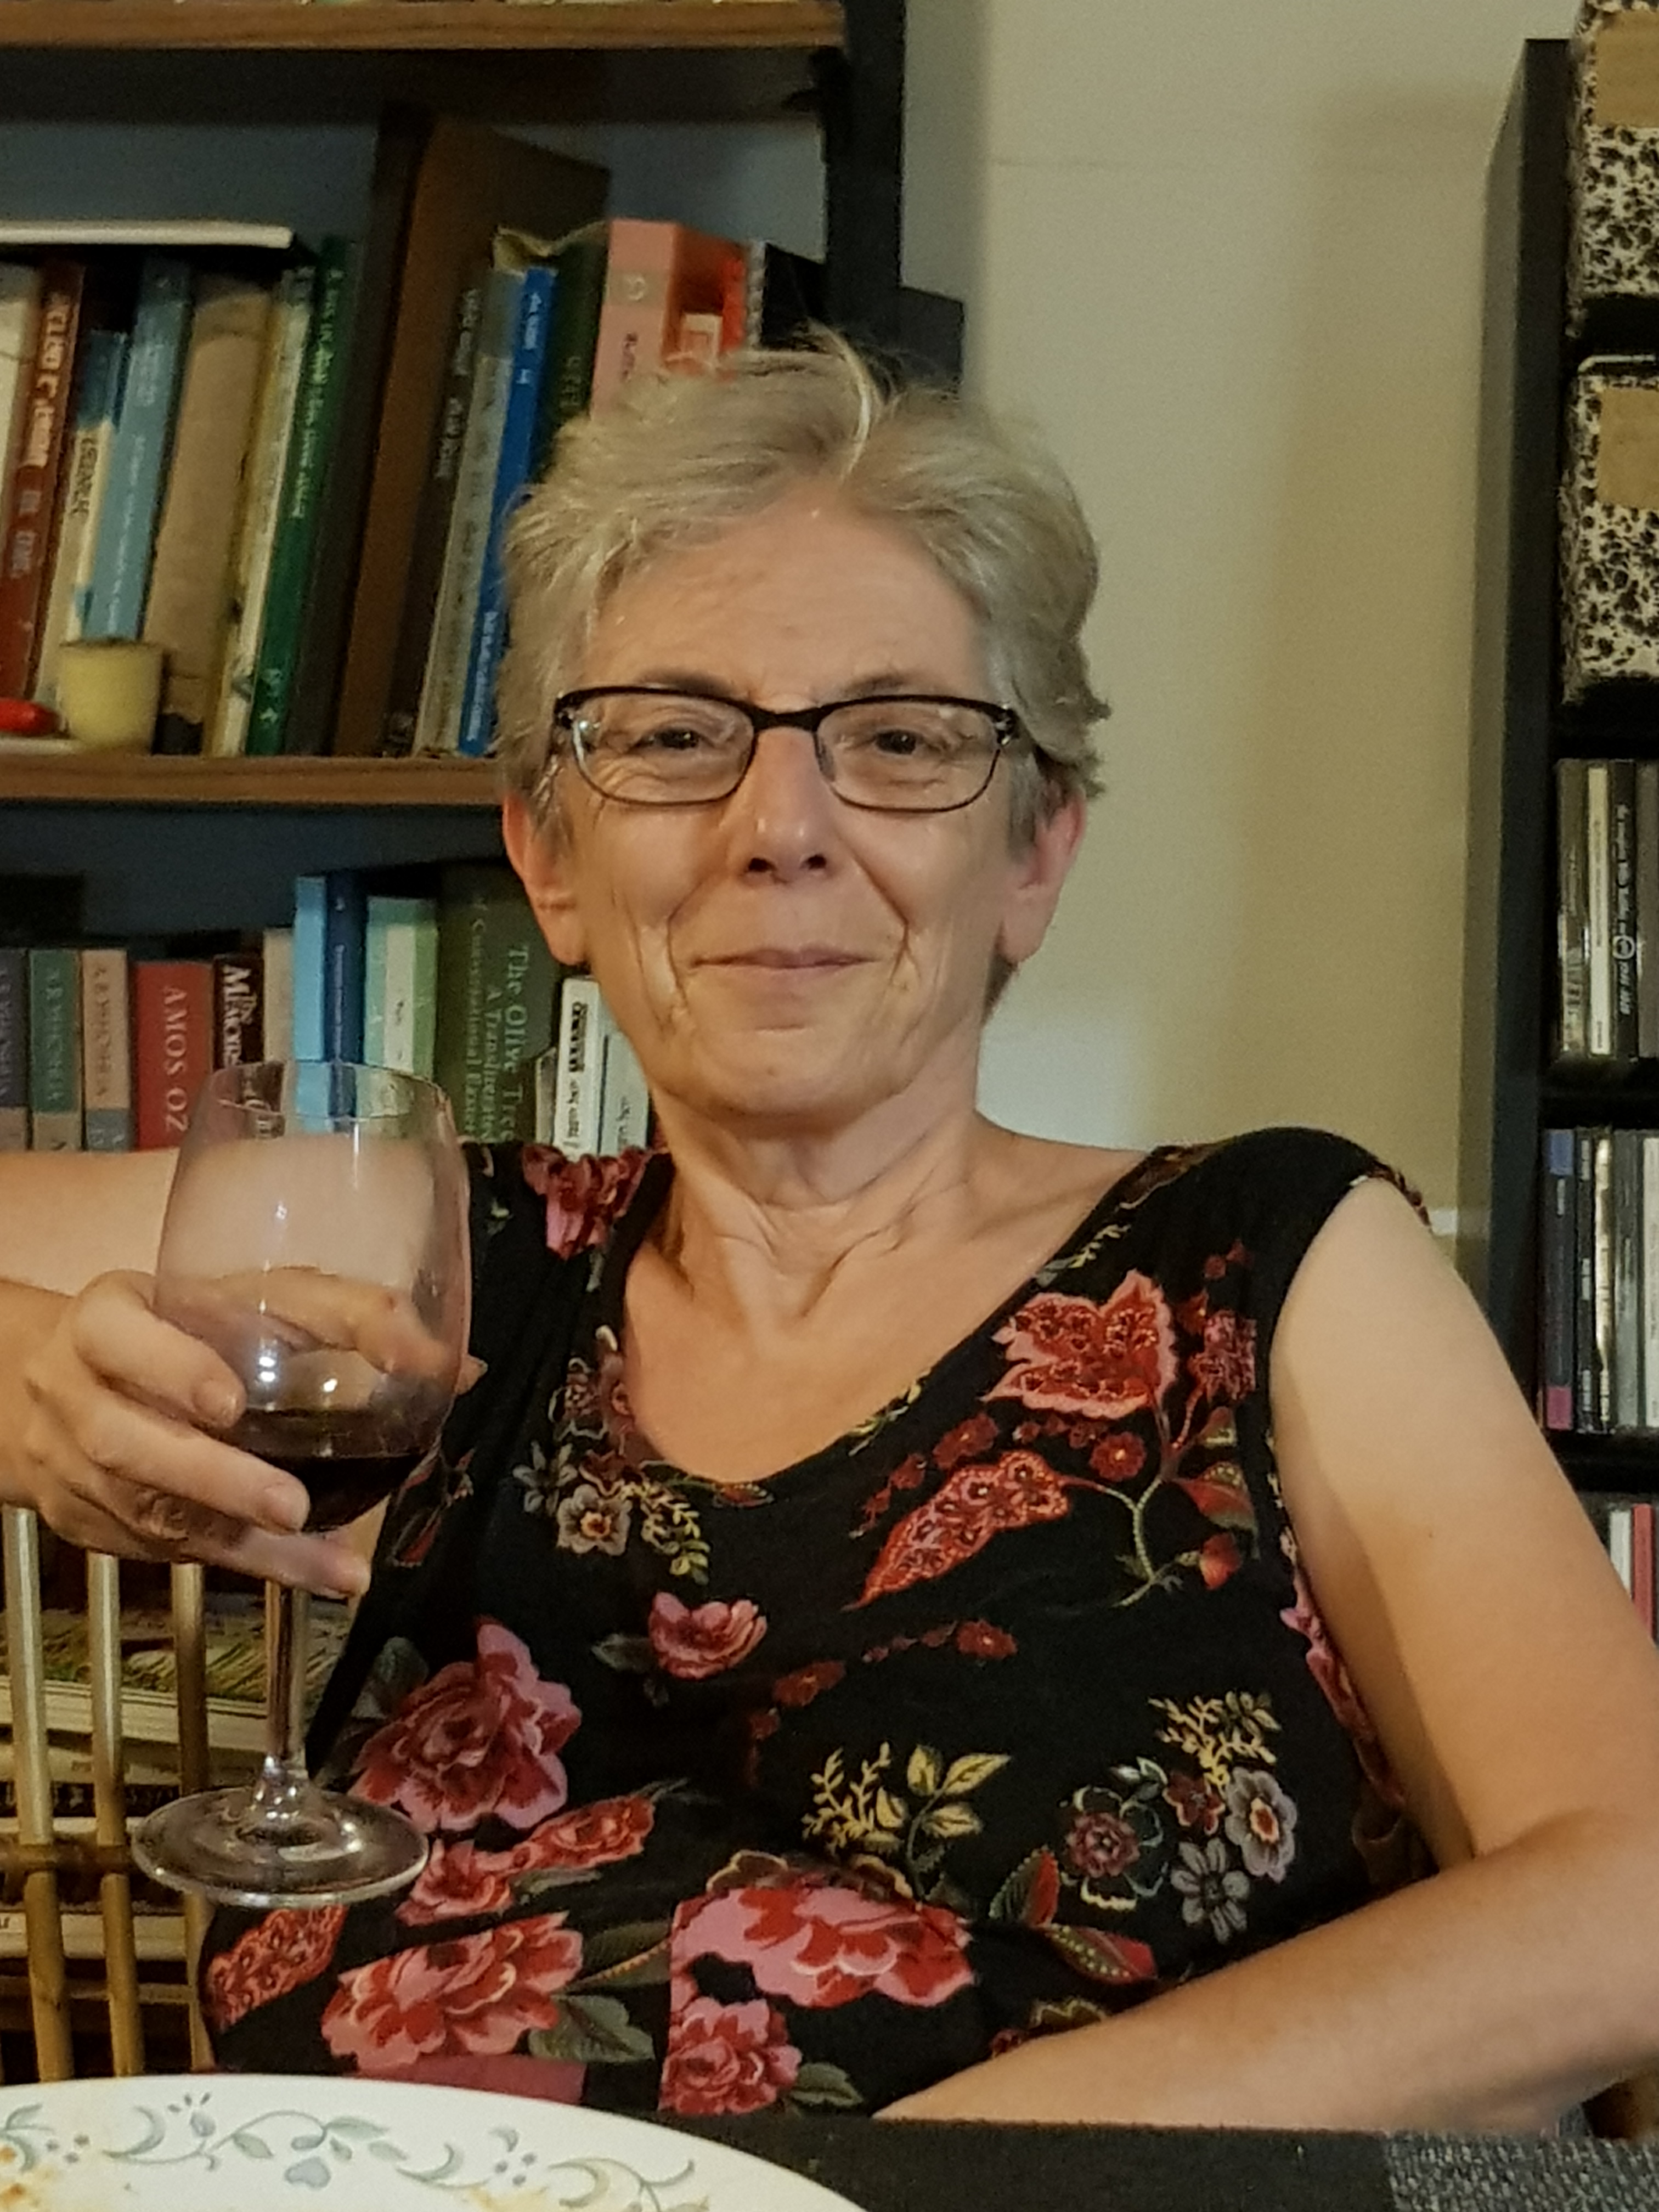 Susan Rothstein 1958 - 2019